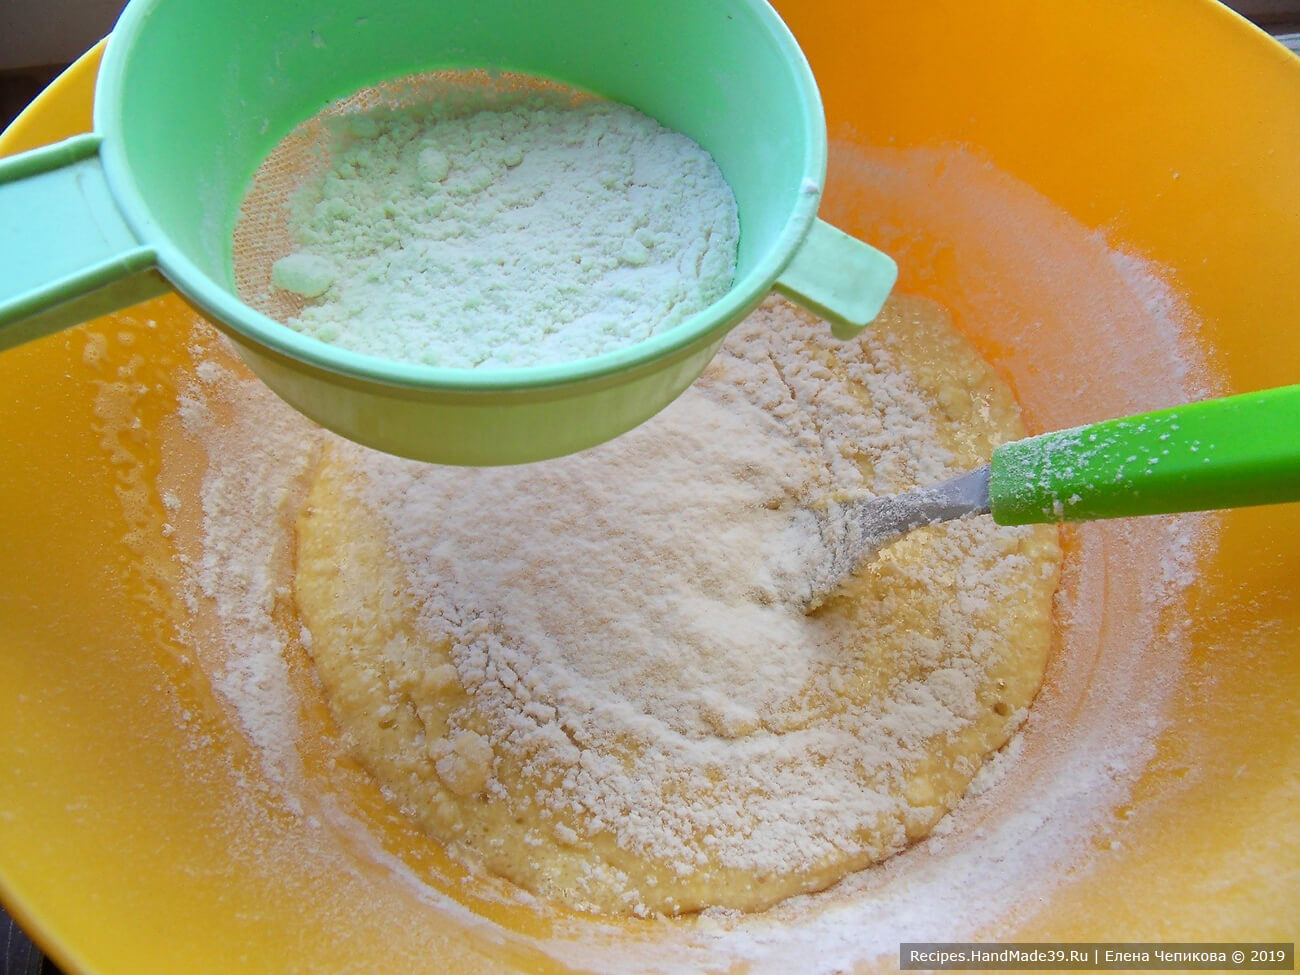 Приготовление мягкого теста: муку просеять с разрыхлителем и порциями подсыпать к маргарино-яичной массе